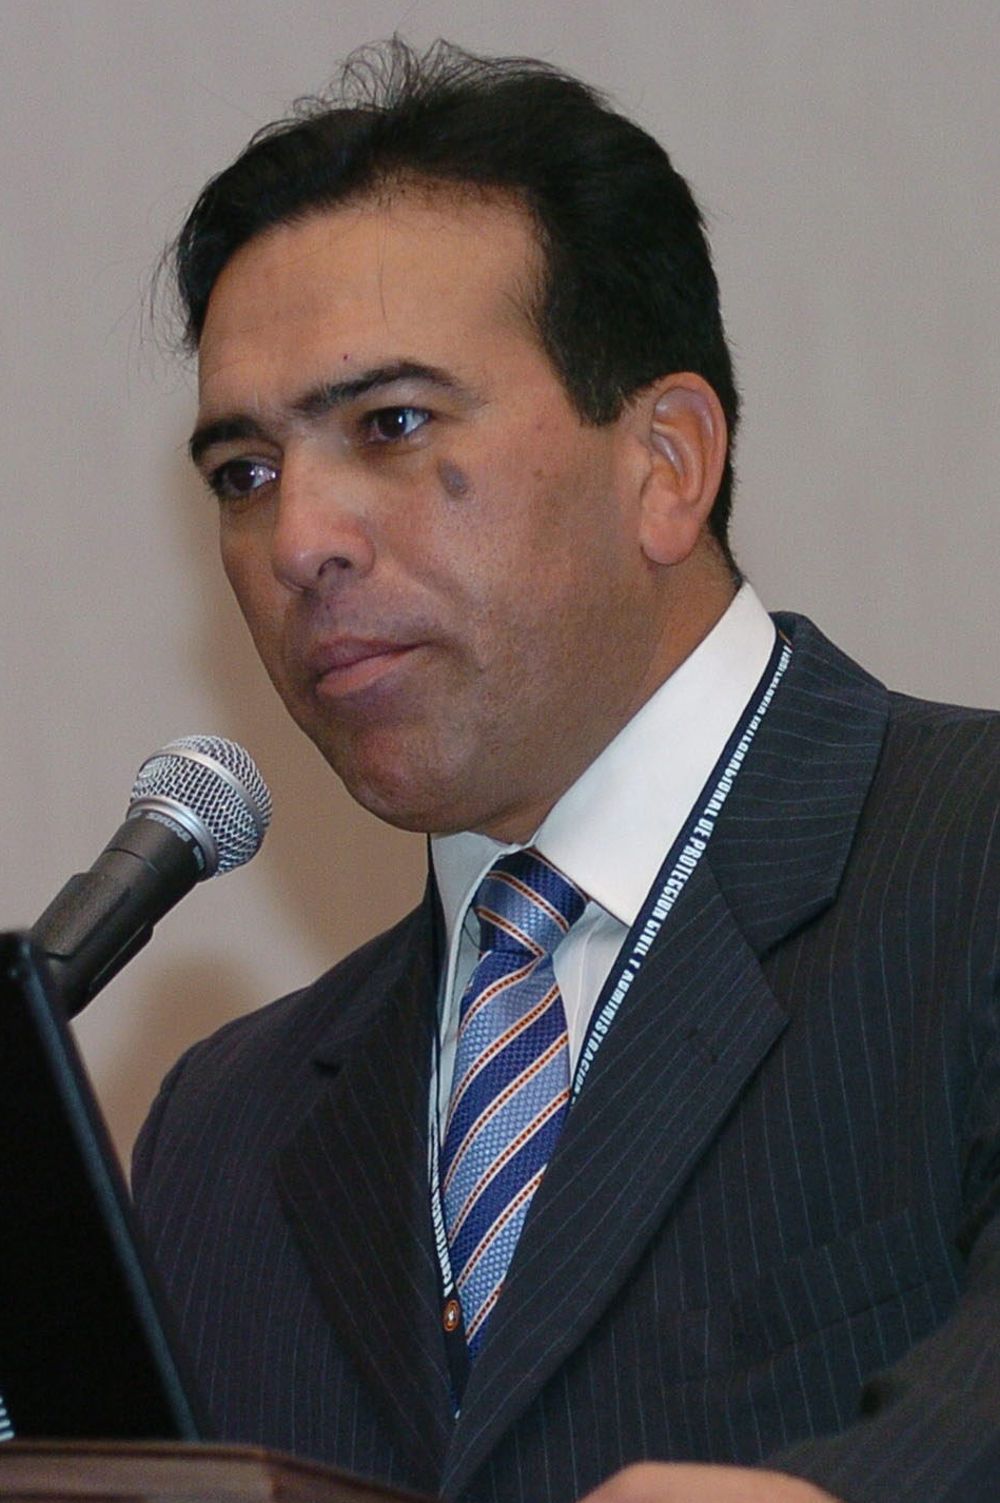 Fotografía de archivo fechada en 2008 que muestra al entonces director de Protección Civil y Administración de Desastres de Venezuela, Antonio Rivero.